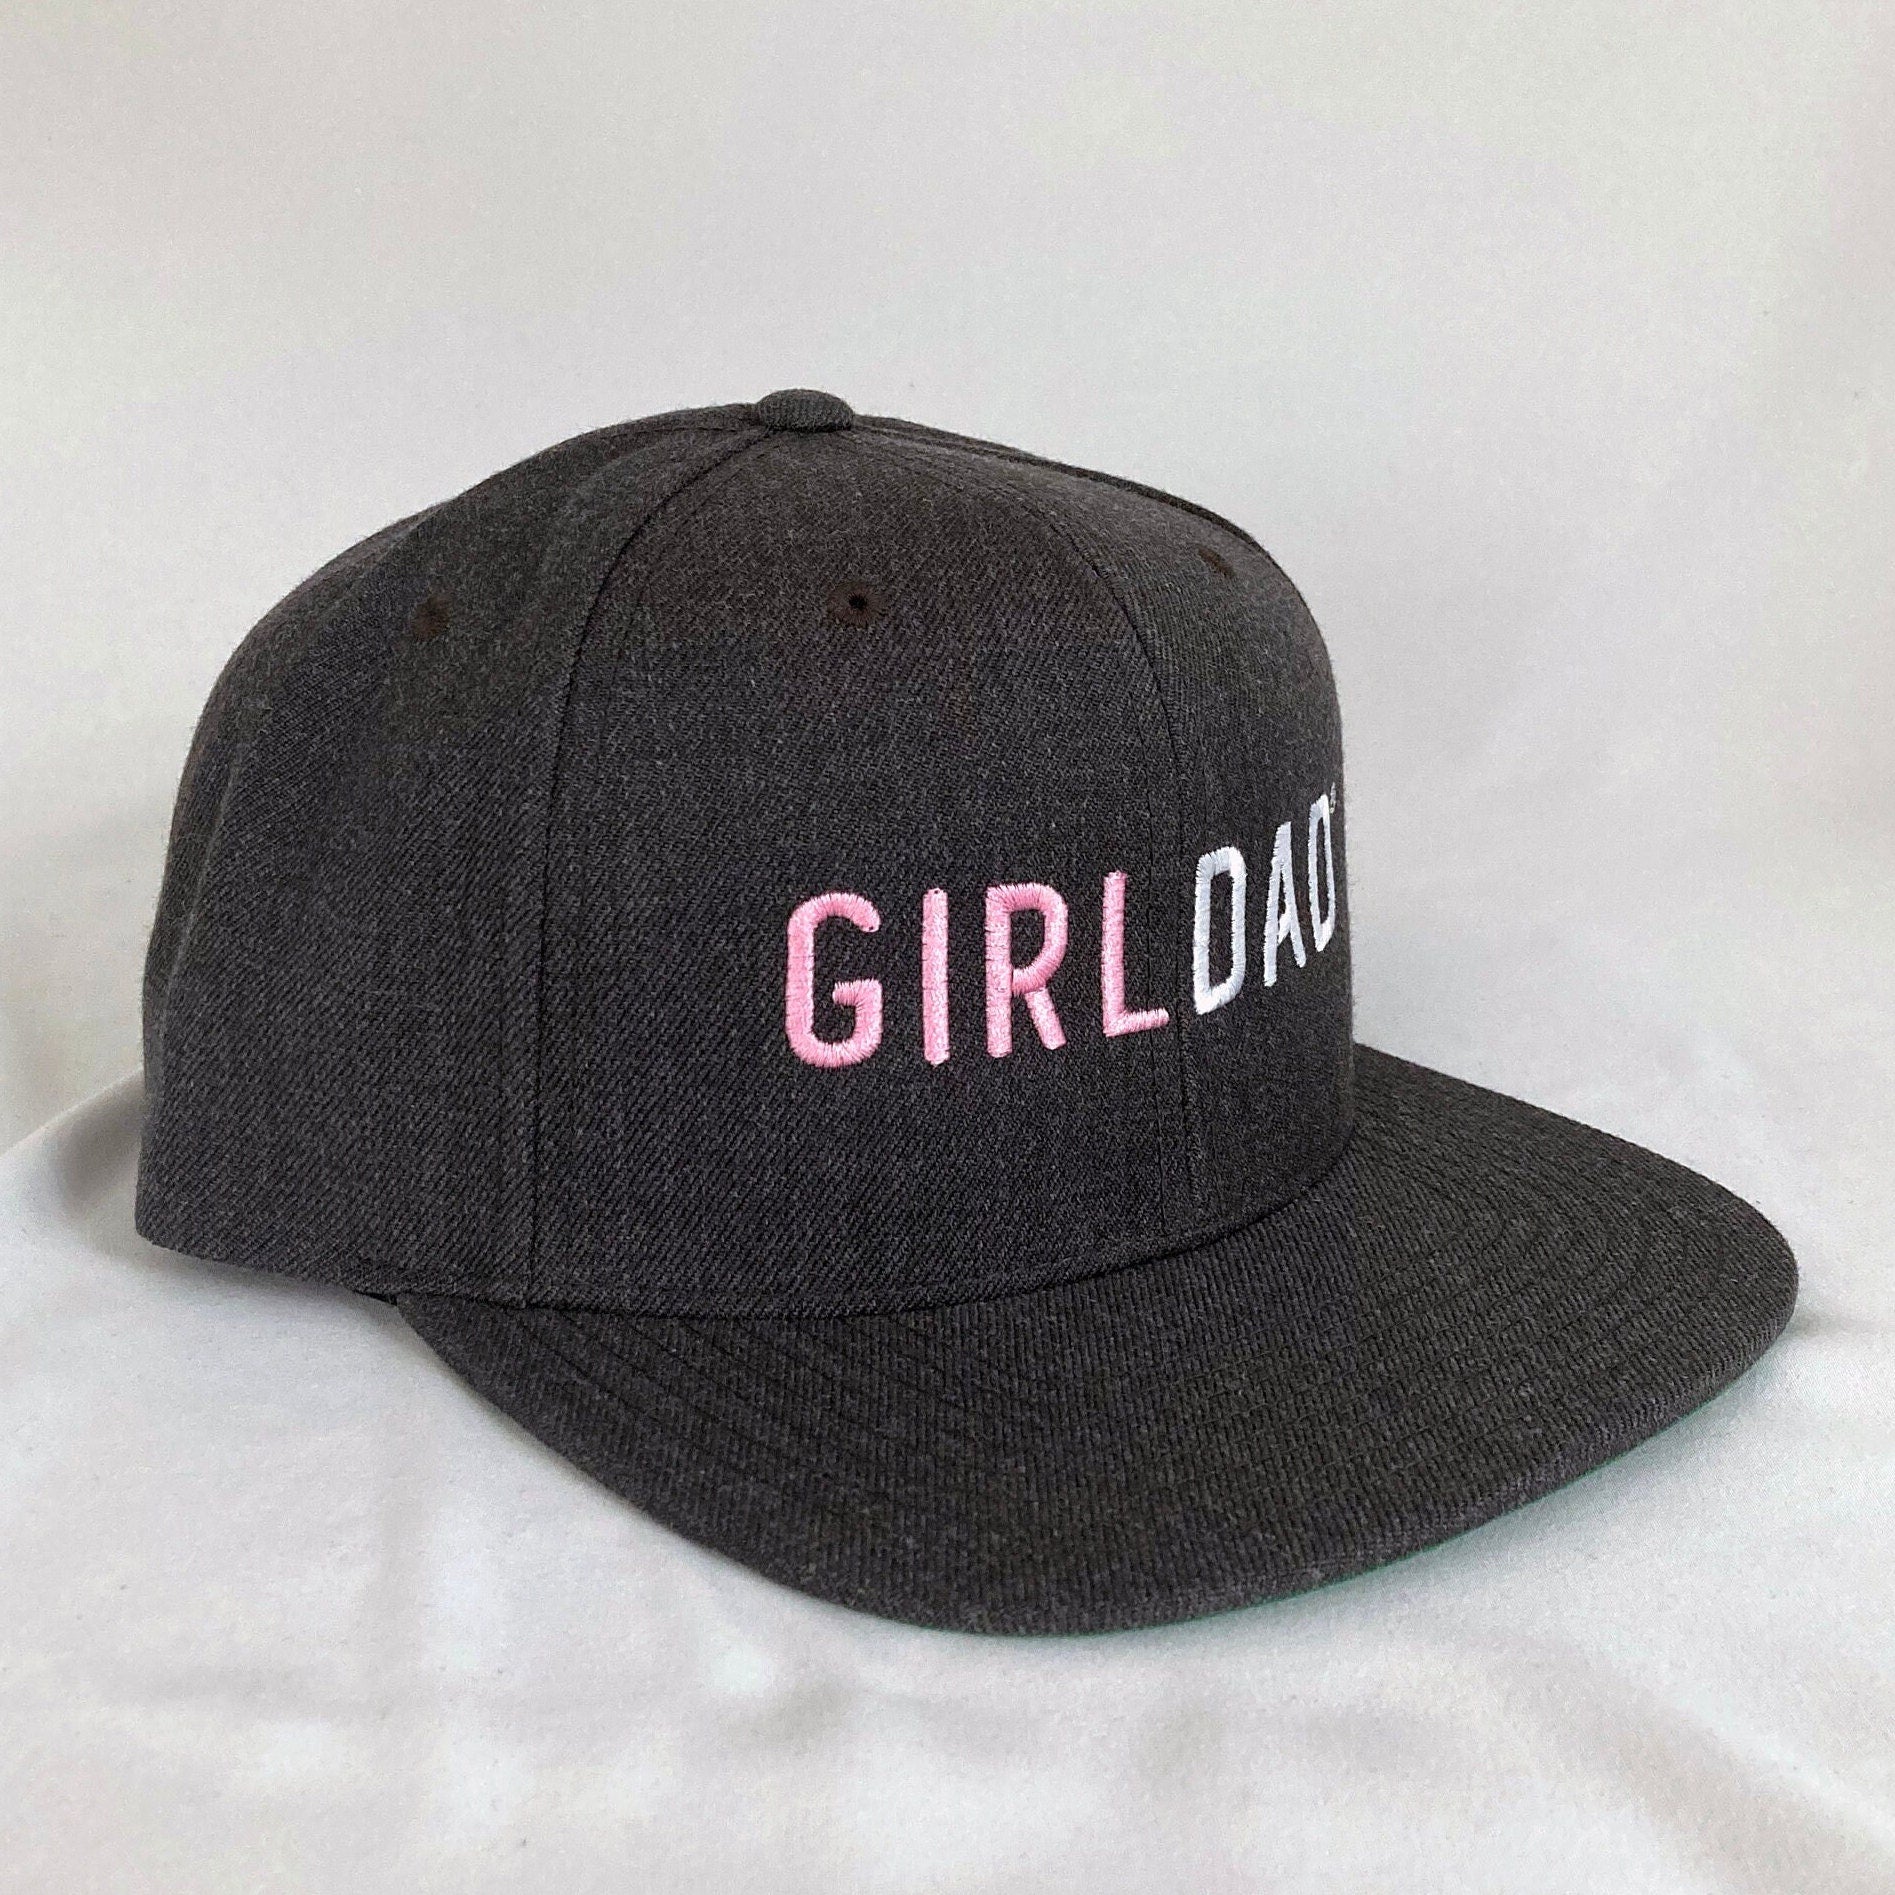 Girldad® Dark Heather Grey with Pink Embroidered Trucker Hat